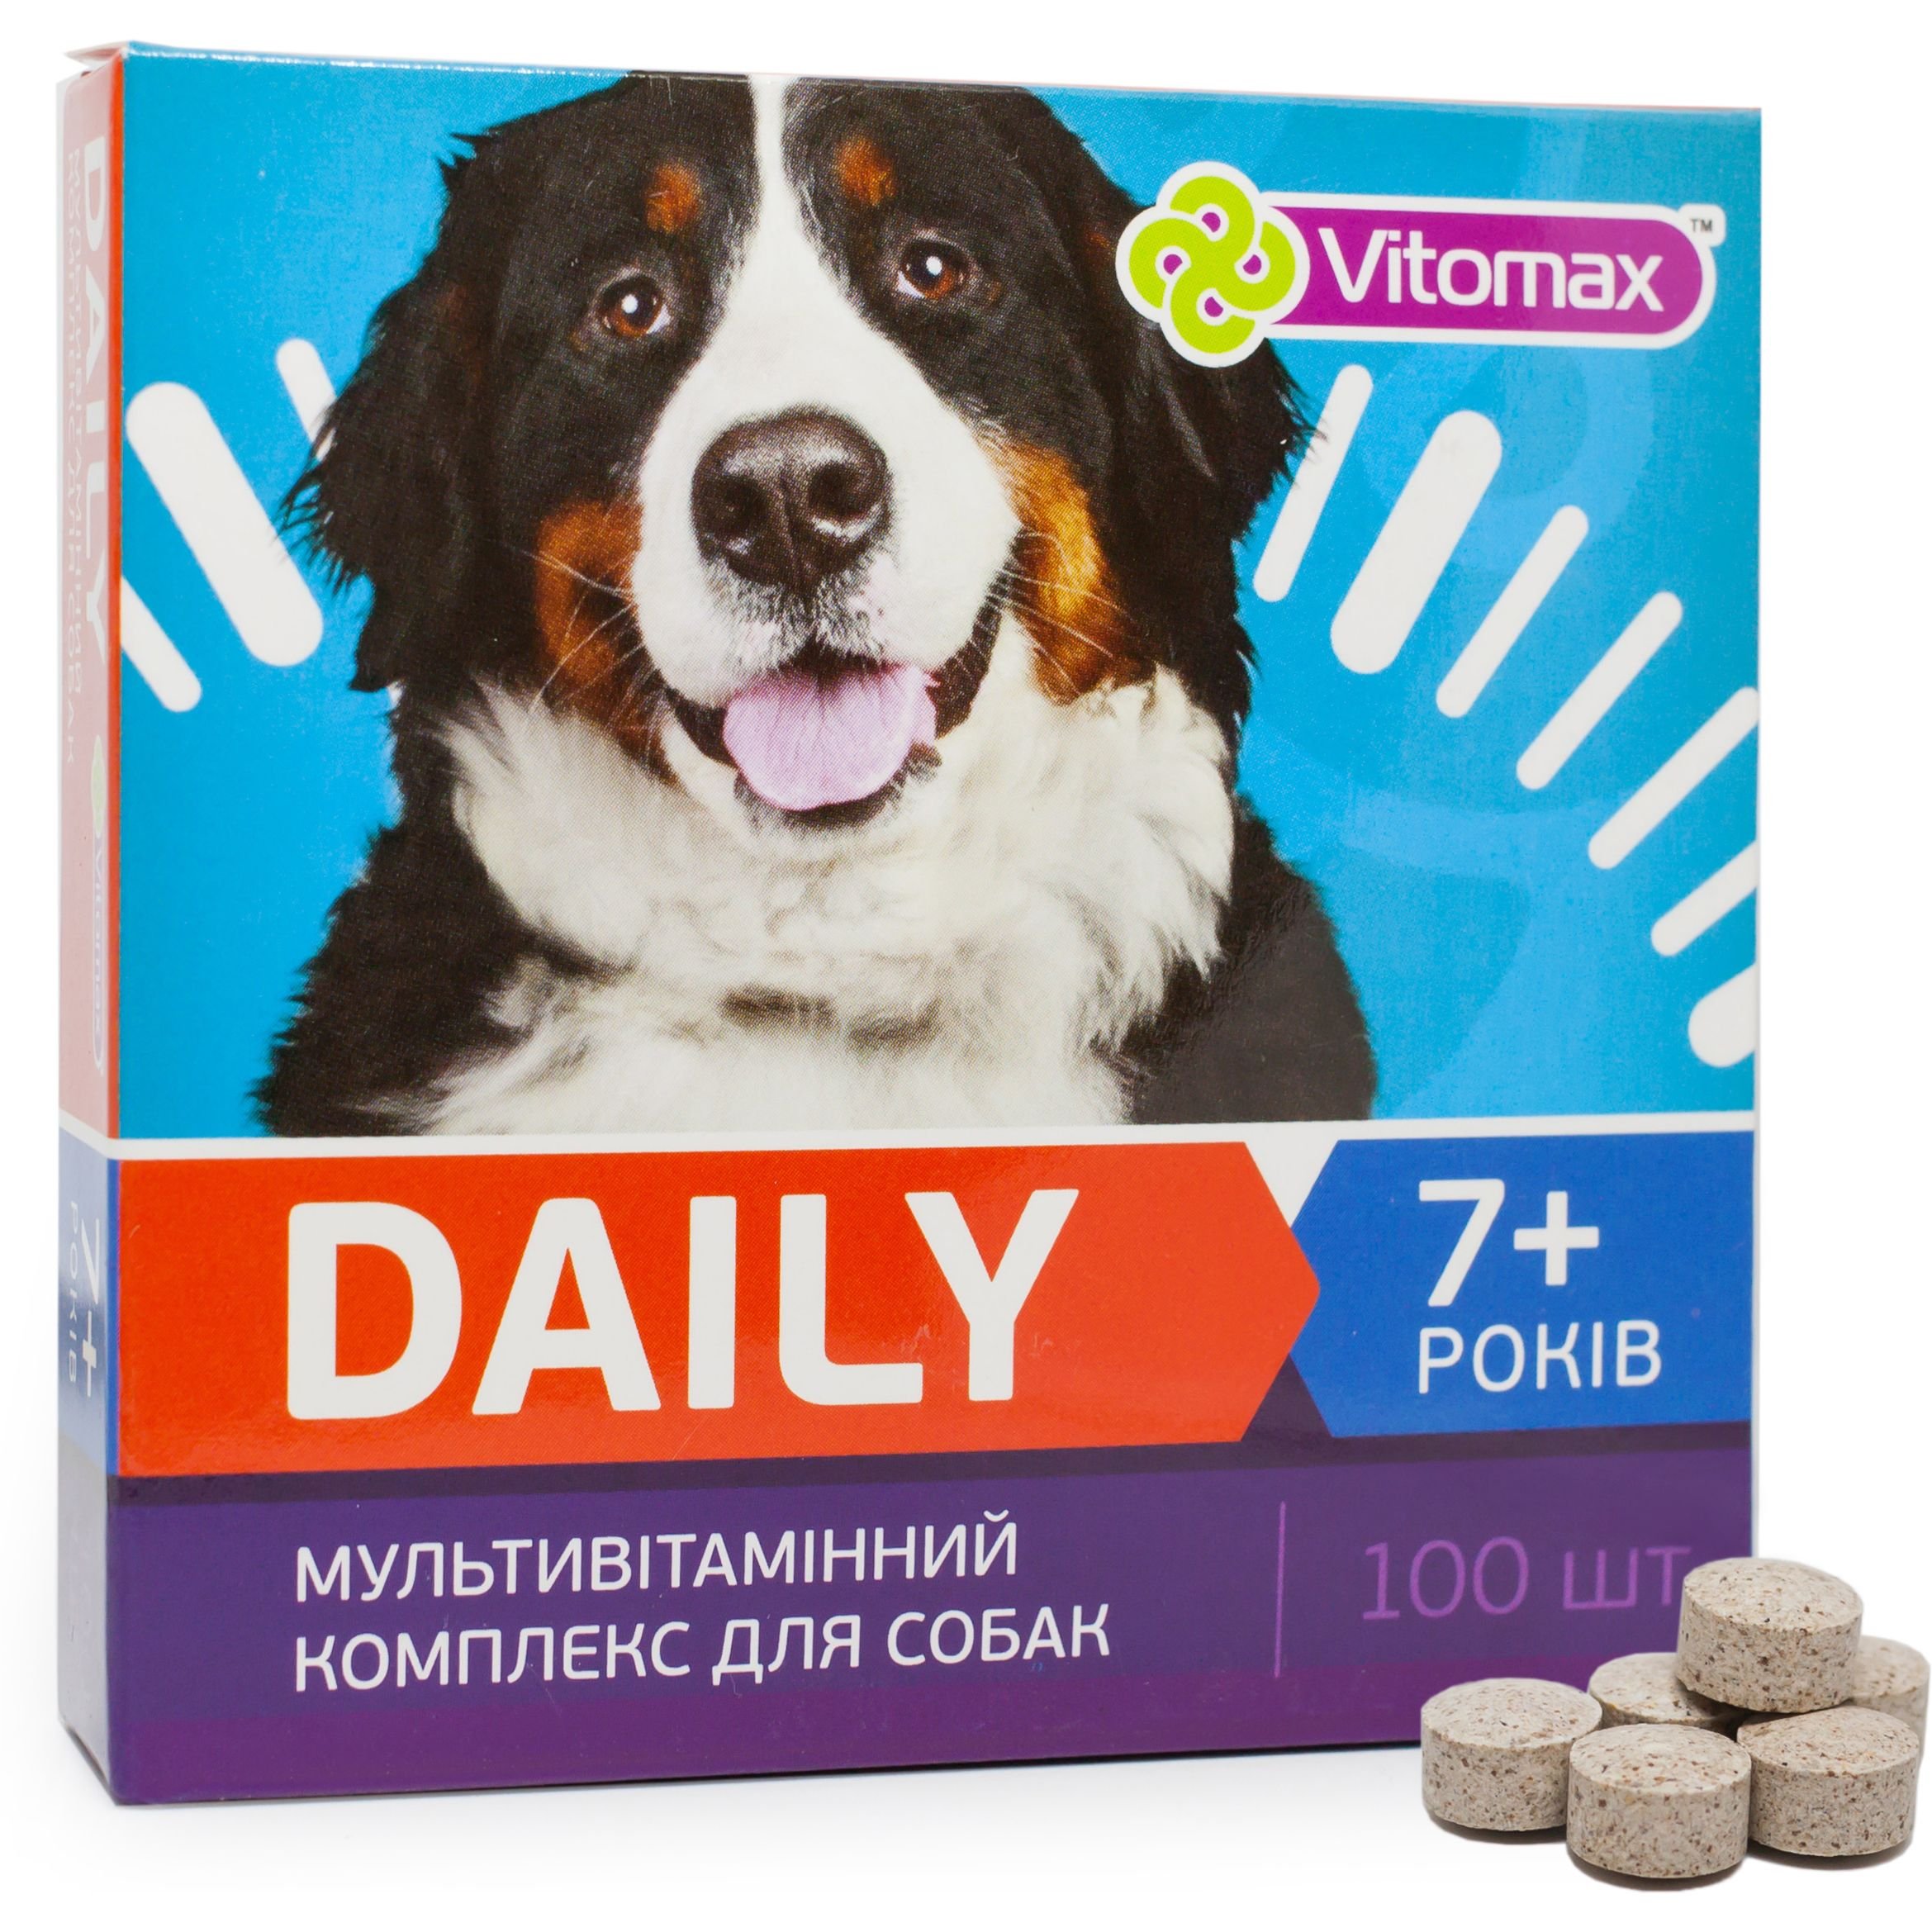 Мультивітамінний комплекс Vitomax Daily для собак 7+ років, 100 таблеток - фото 2